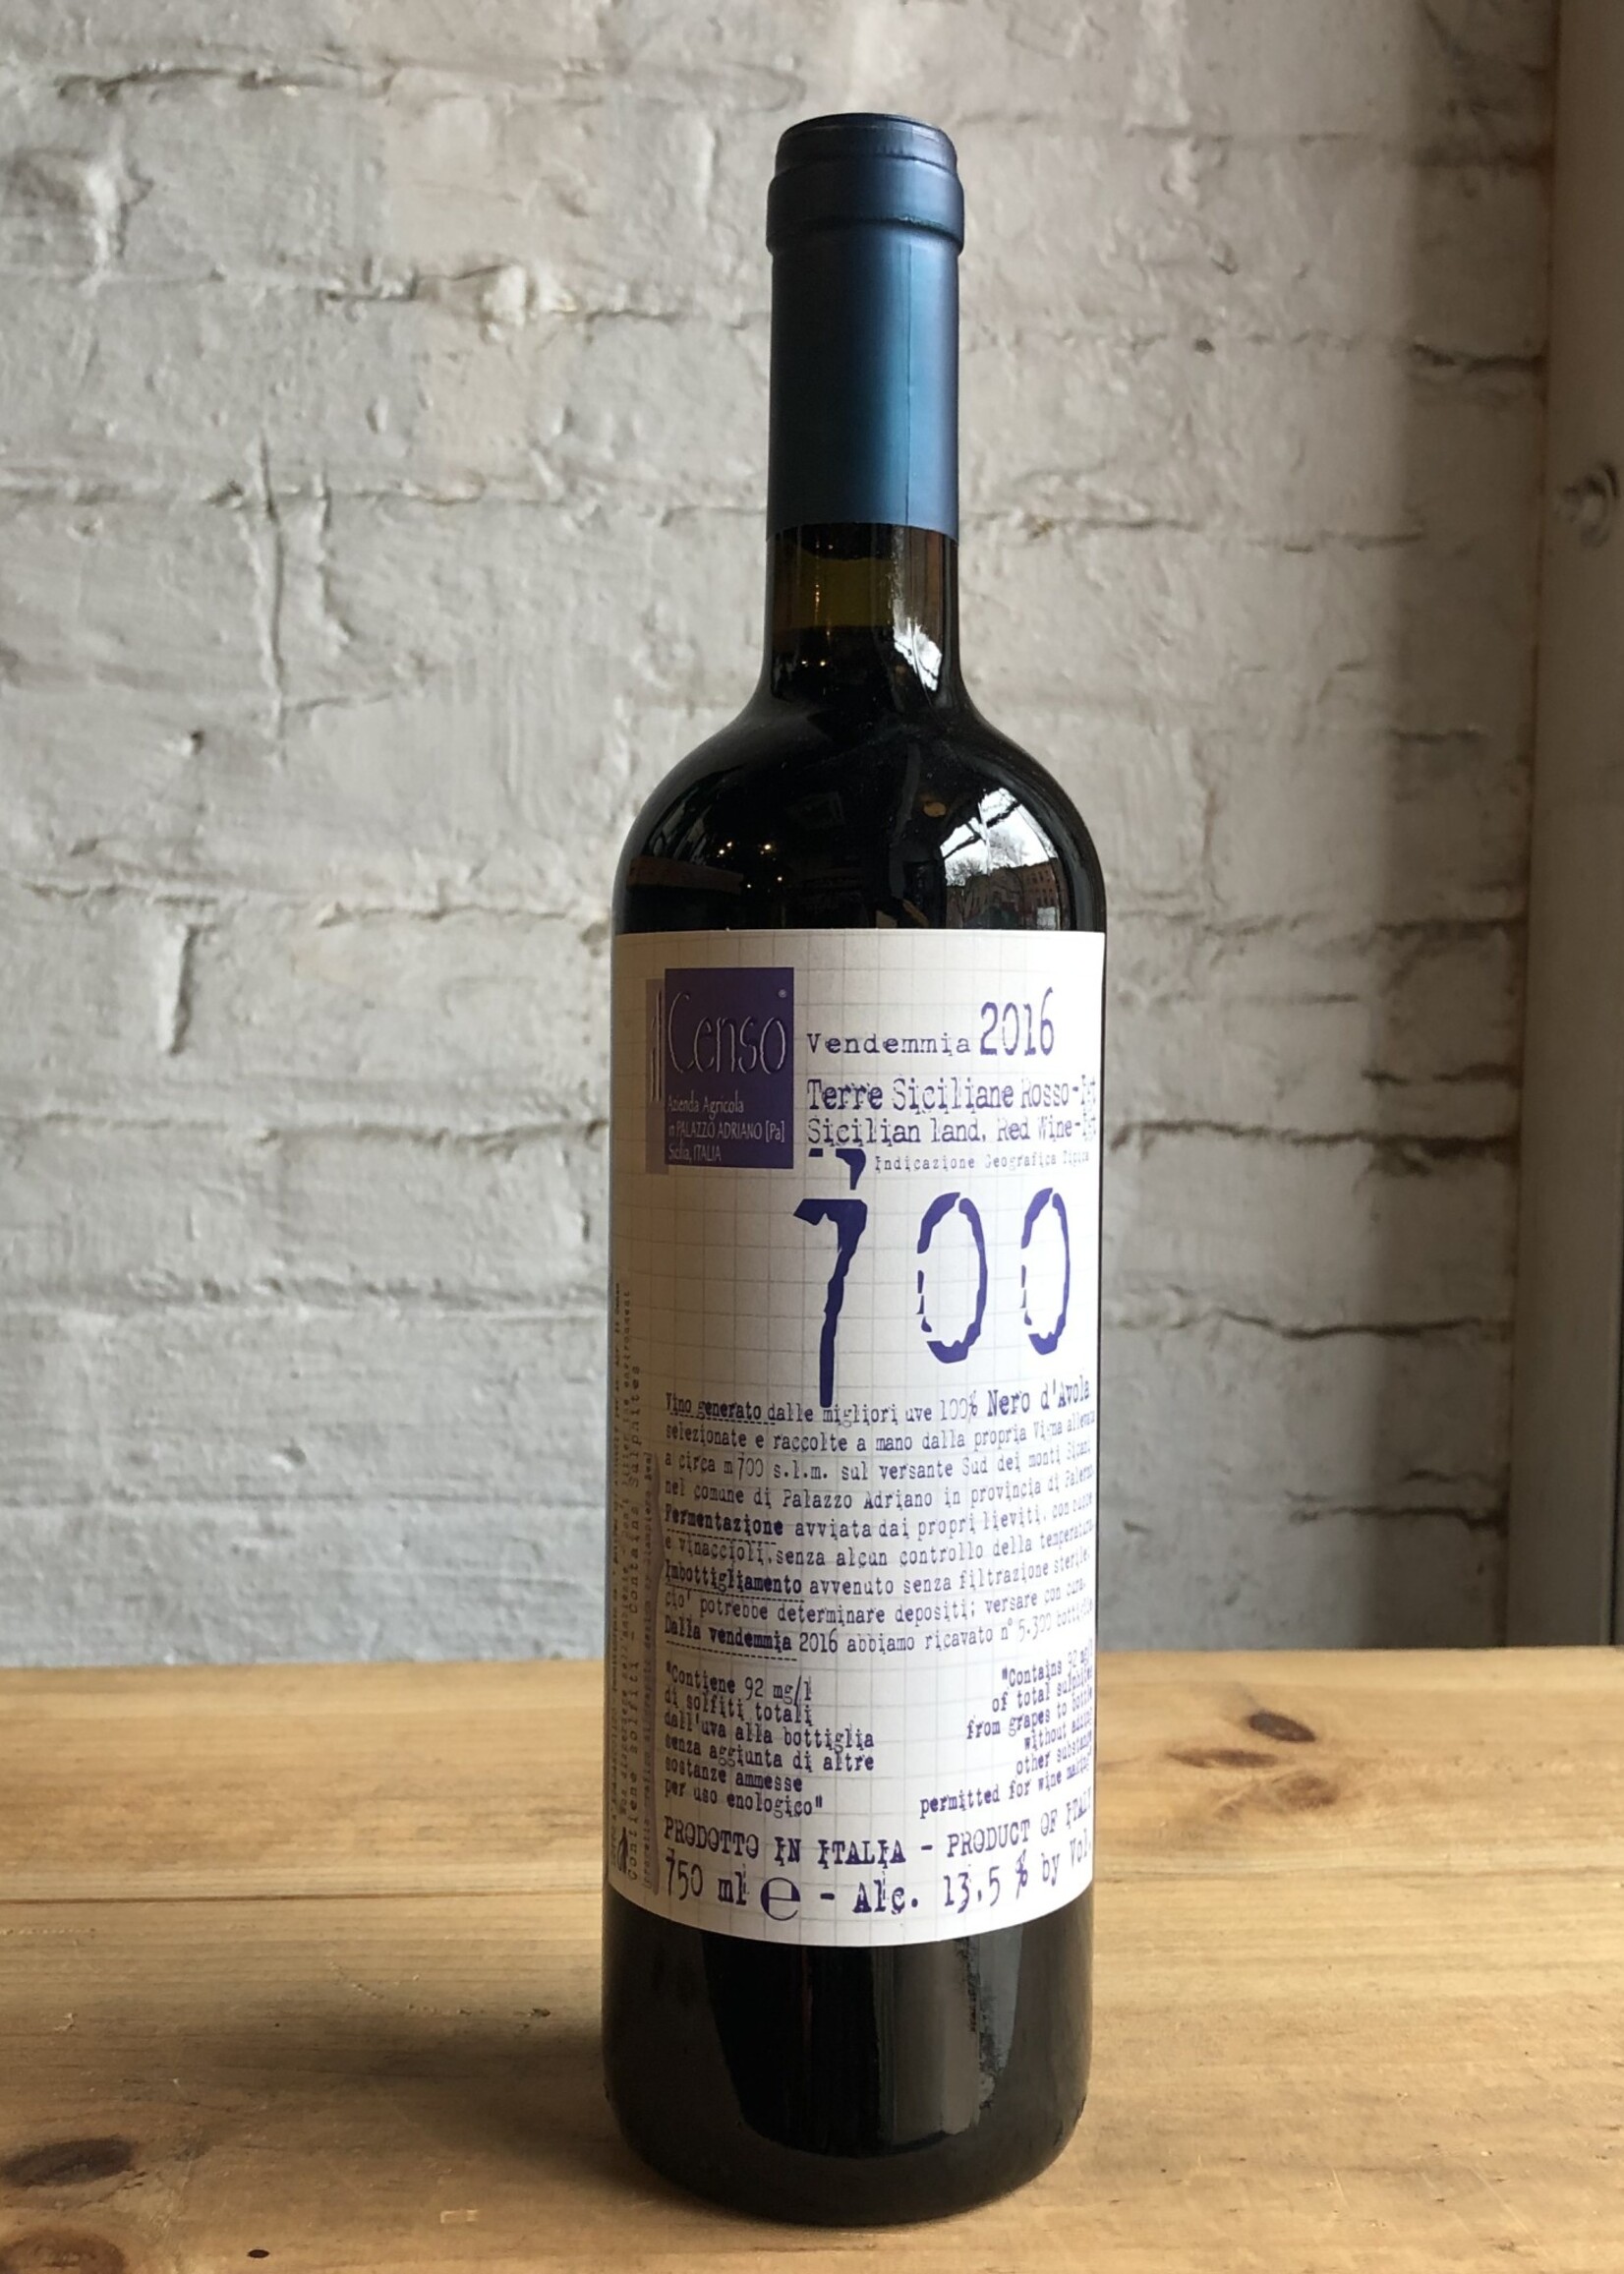 Wine 2016 Il Censo Nero d'Avola 700 Terre Siciliane Rosso - Sicily, Italy (750ml)